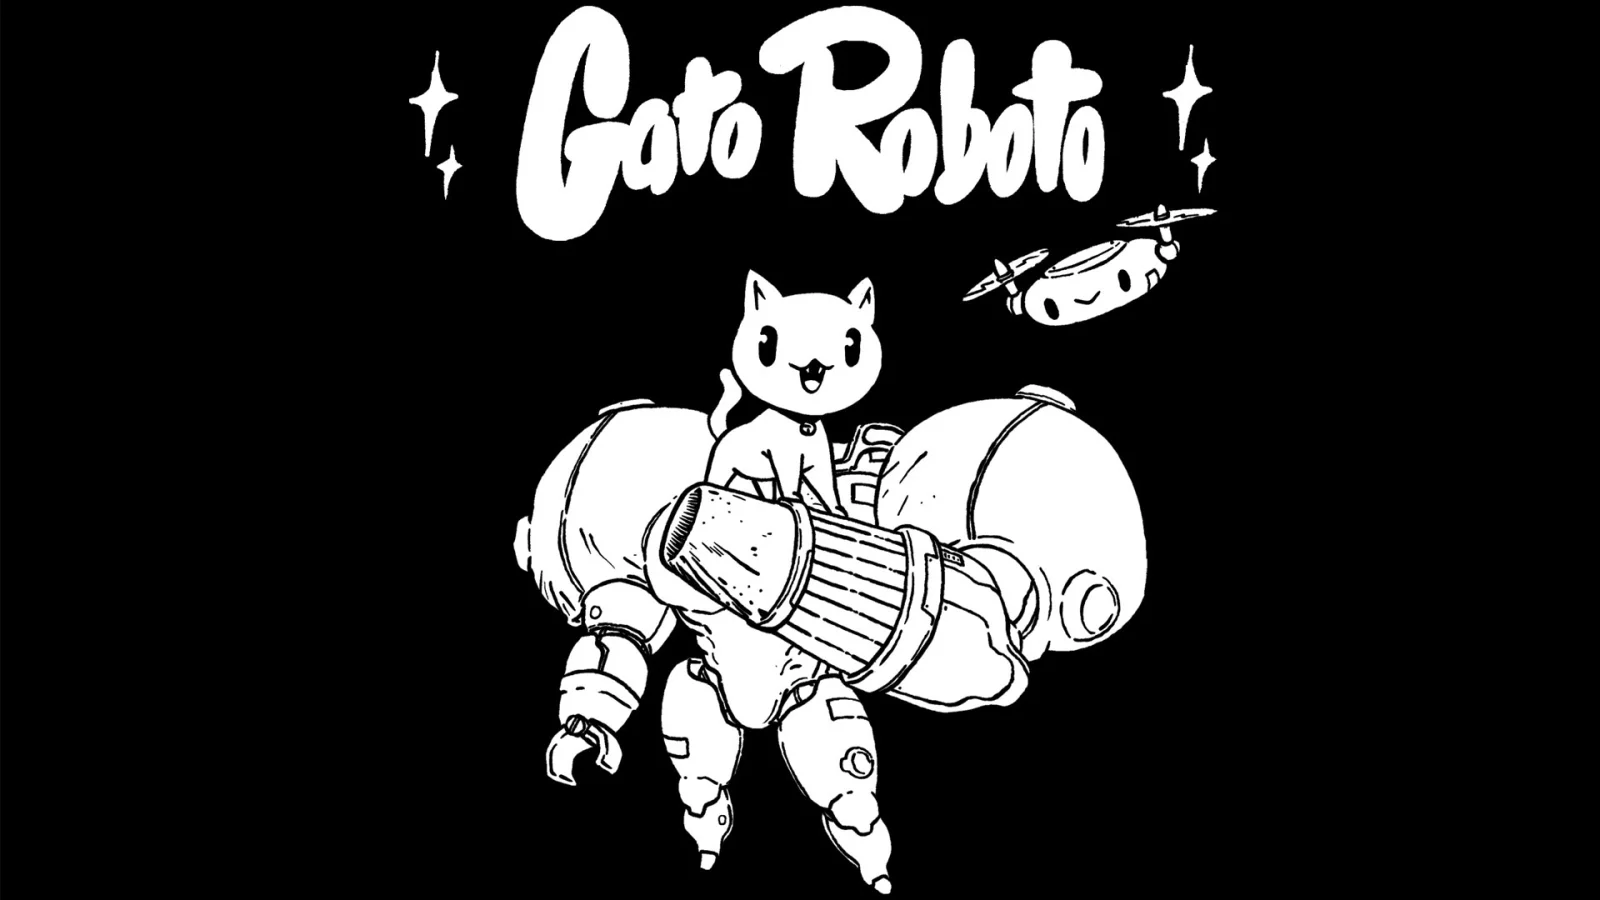 猫猫银河战士！1-bit 游戏《Gato Roboto》上线 Steam 页面 